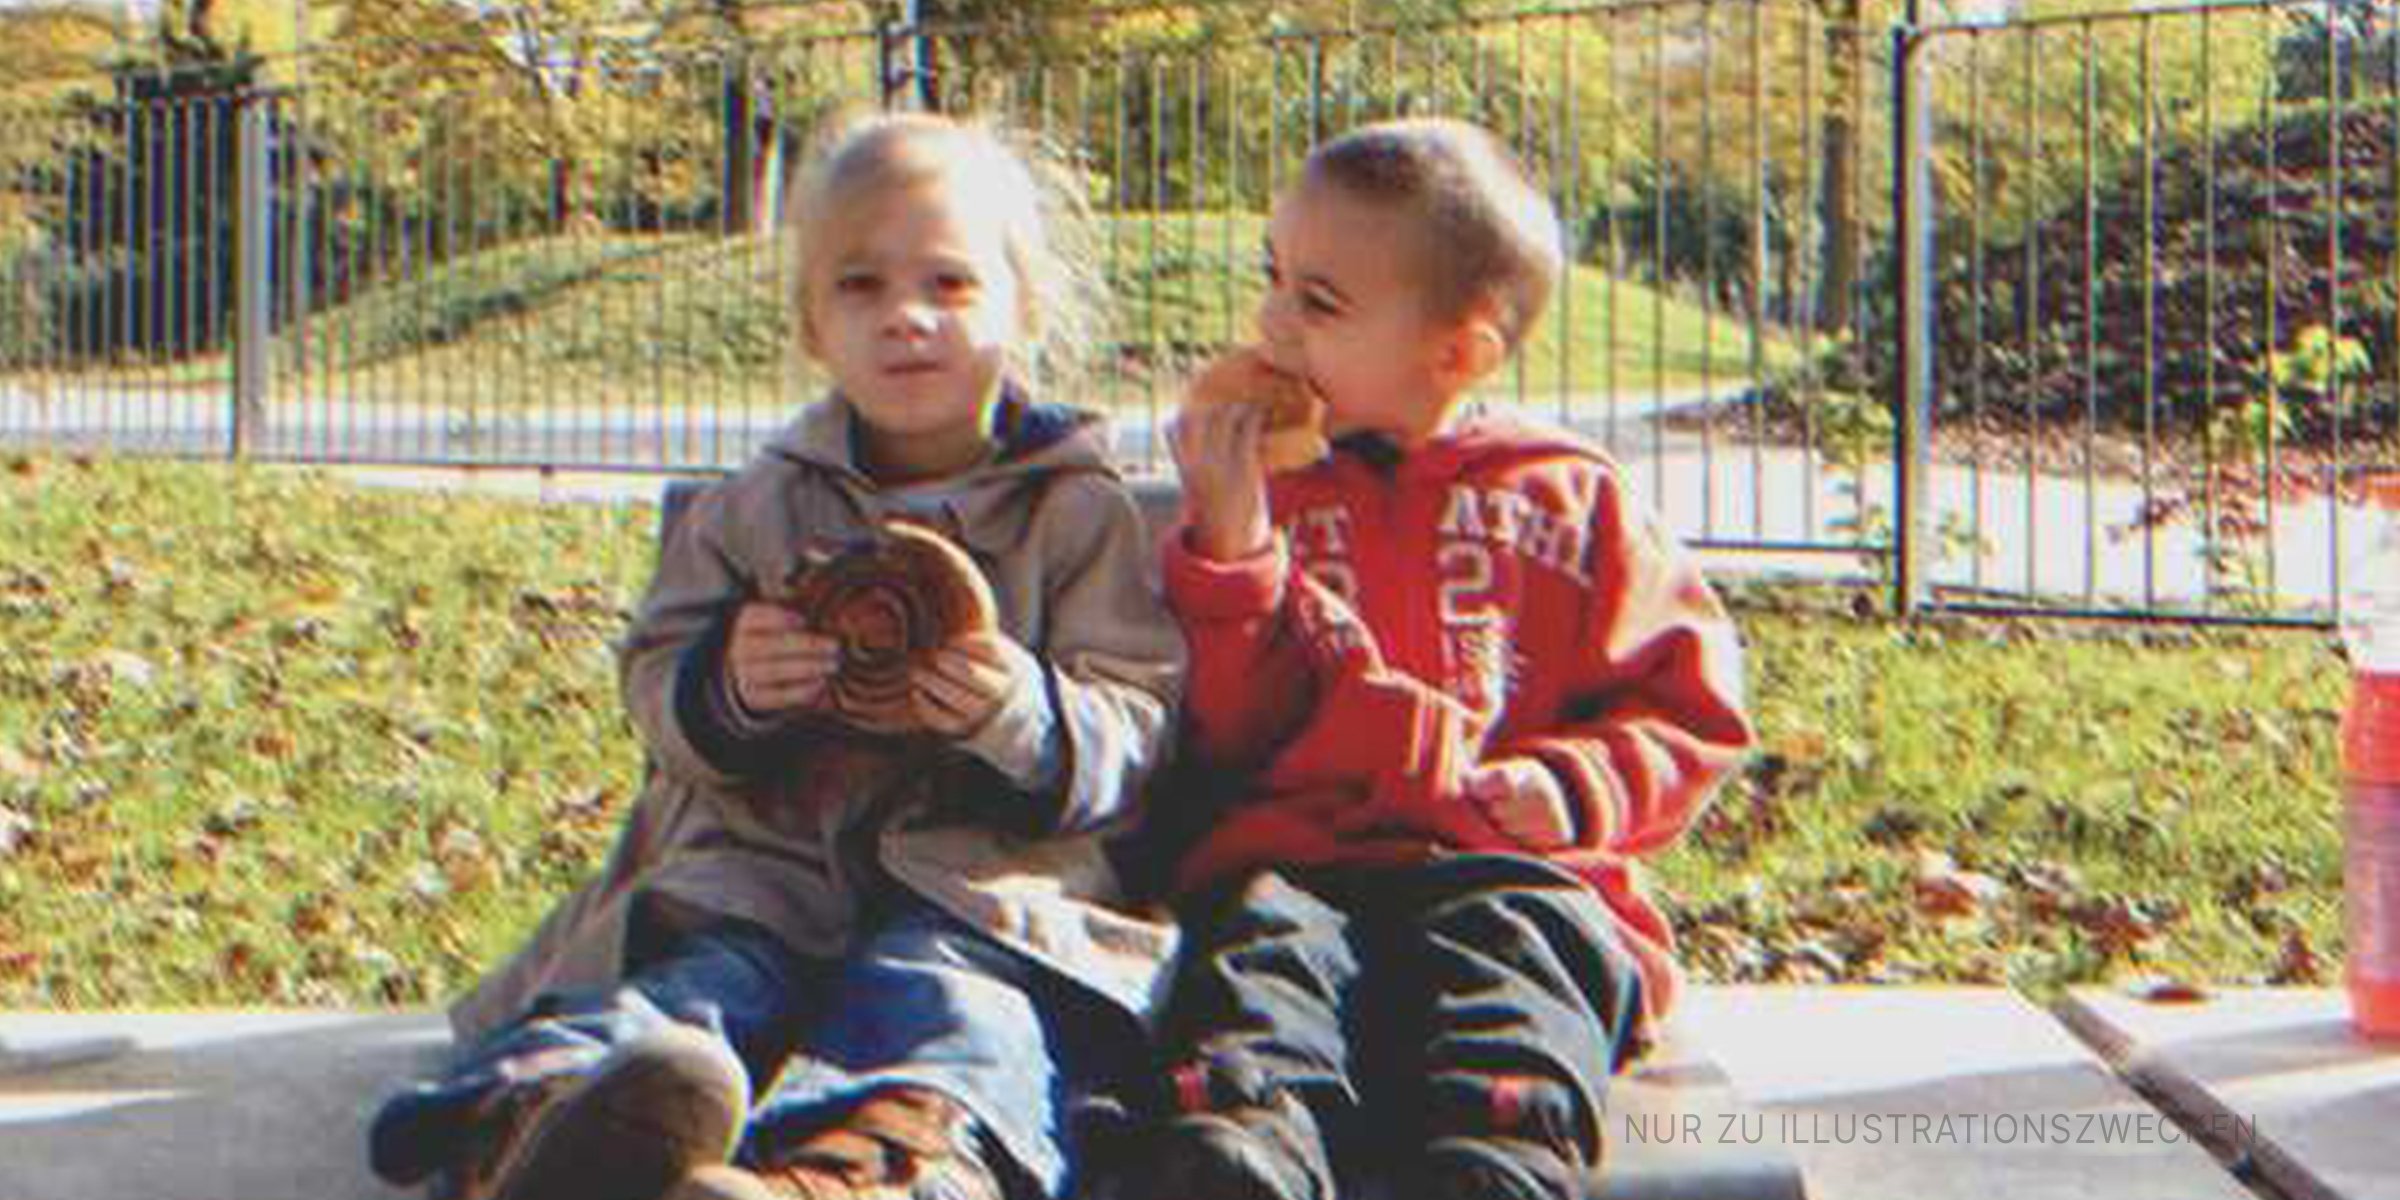 Zwei Kinder essen draußen einen Snack | Quelle: Flickr / Simóca & Annus (Lizenzfrei)